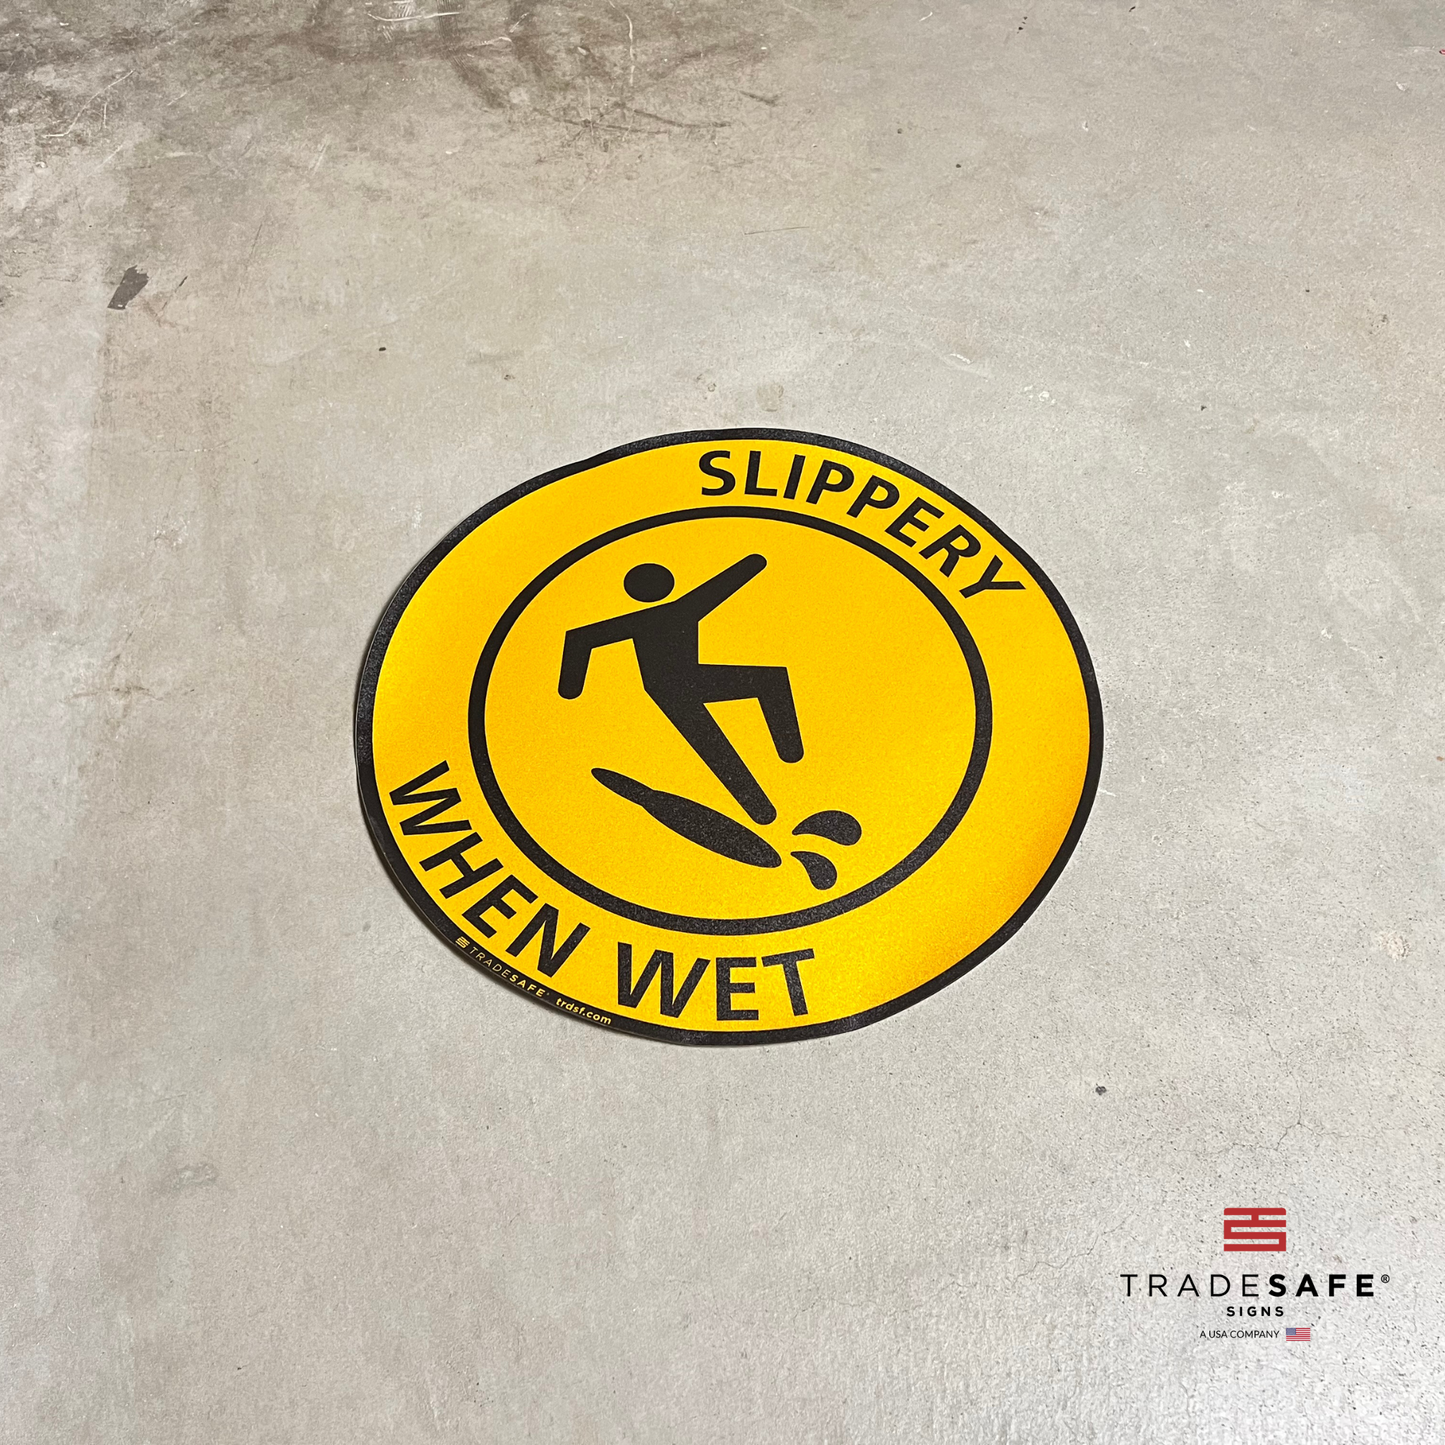 "slippery when wet" sign vinyl sticker on floor